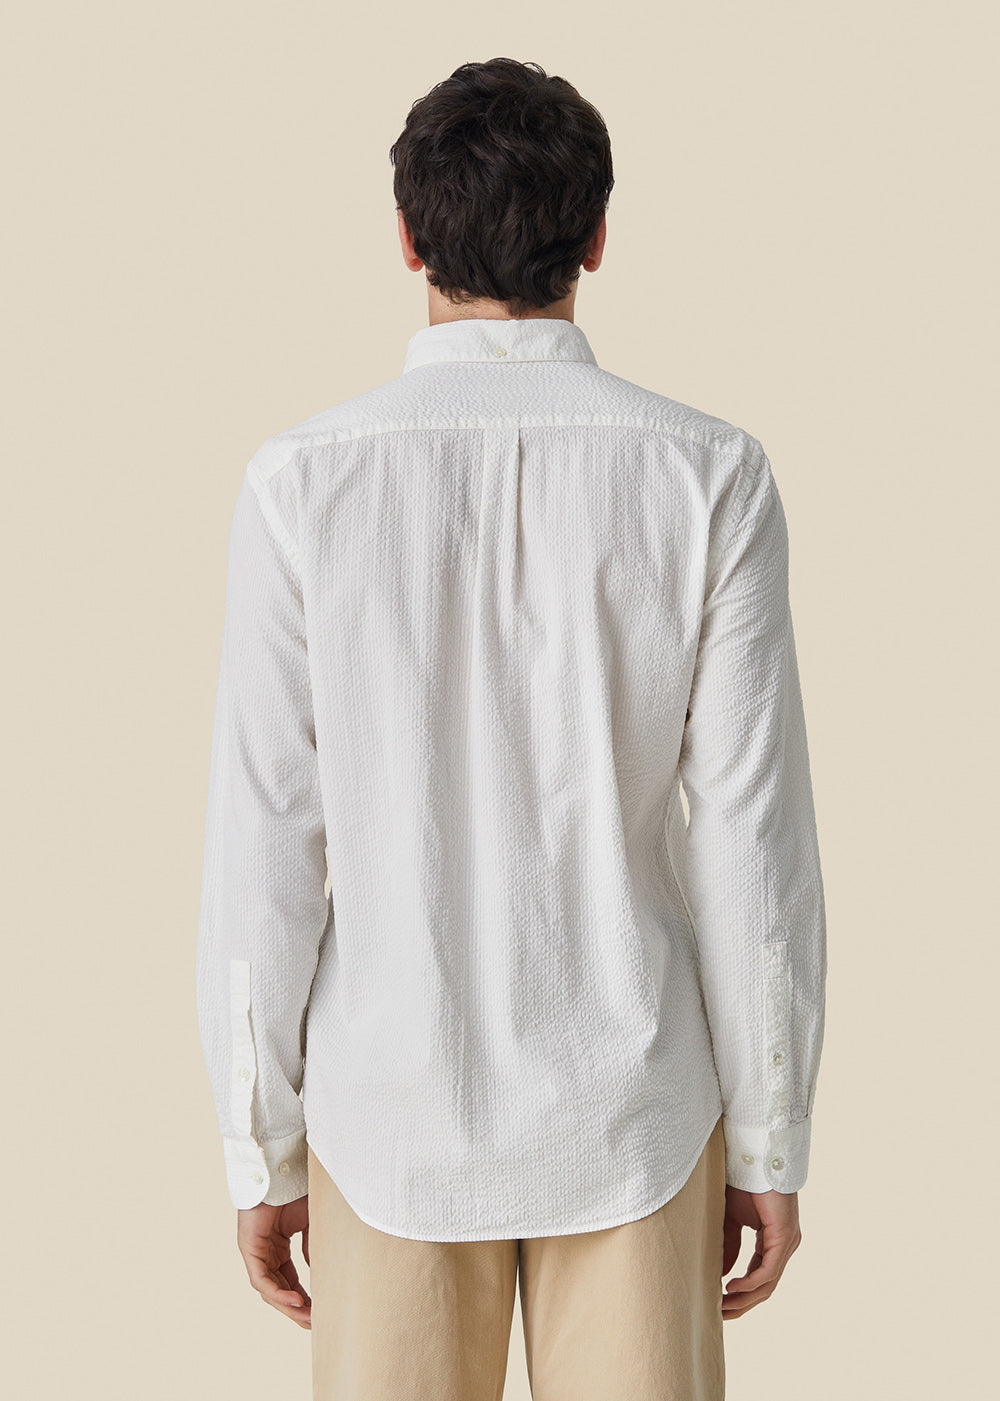 Atlantico Shirt - White - Portuguese Flannel Canada - Danali